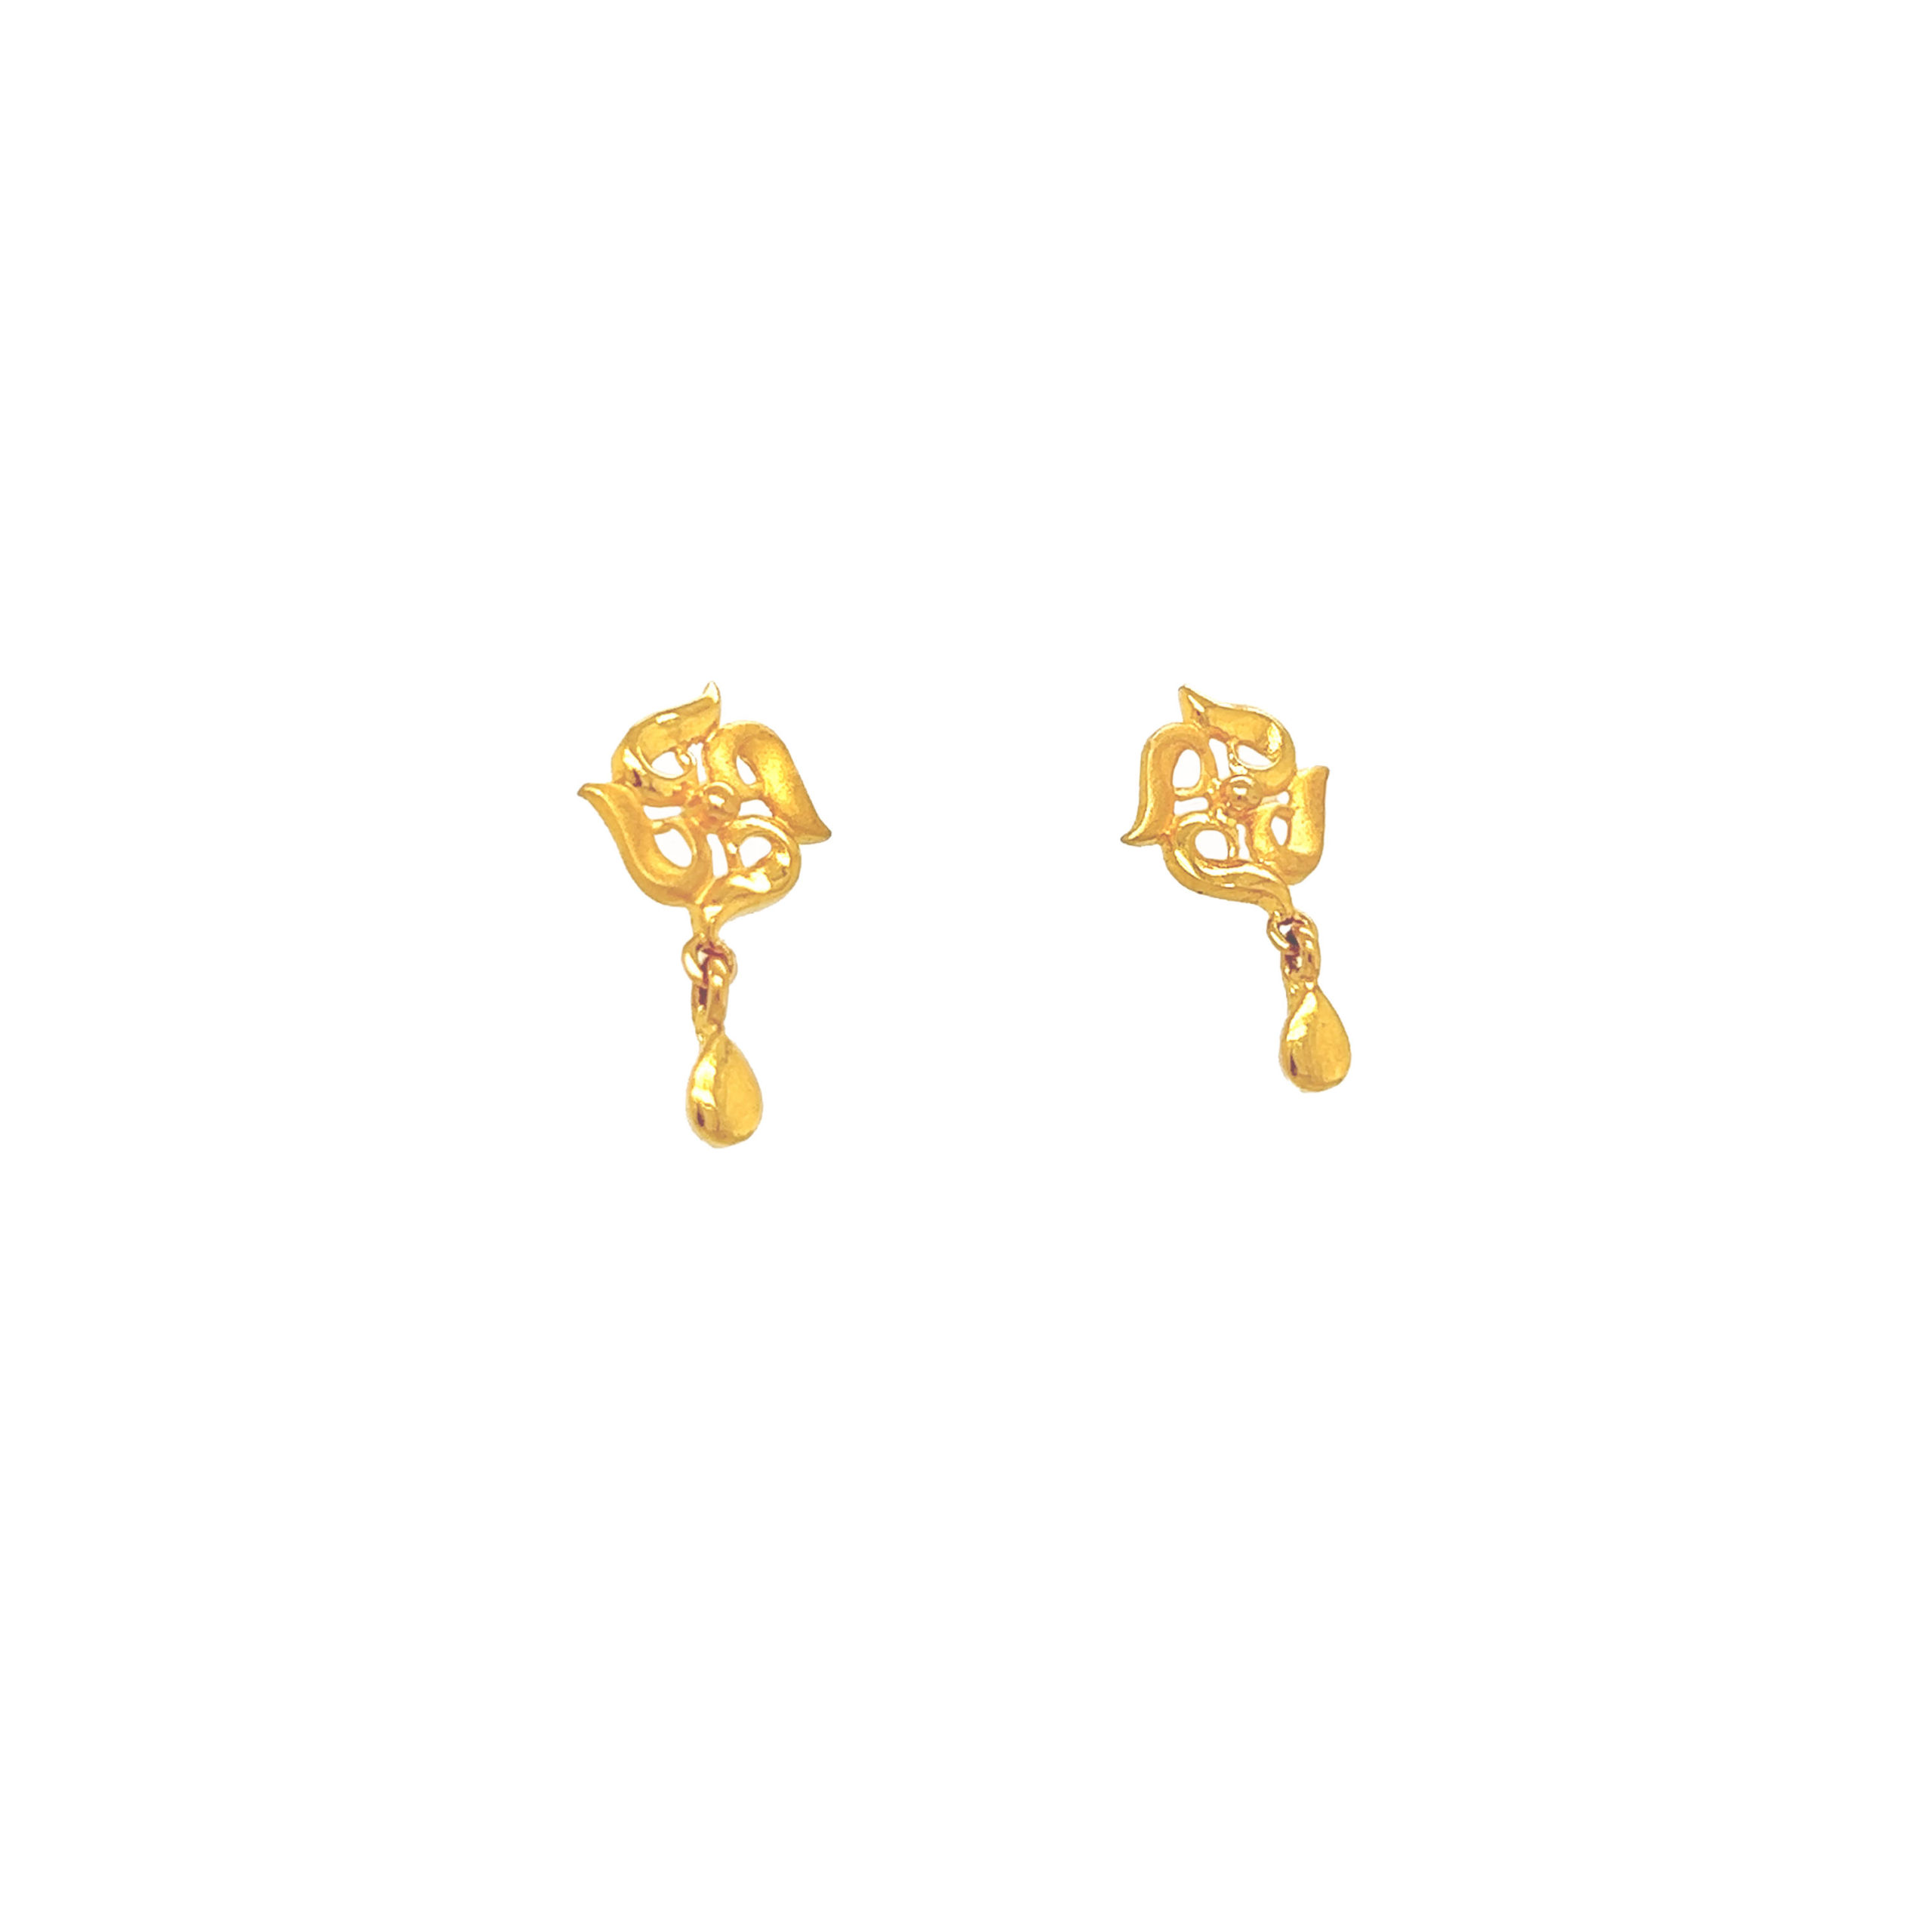 Small Daily Wear Hoop Type Gold Earrings For Office Wear ER2353